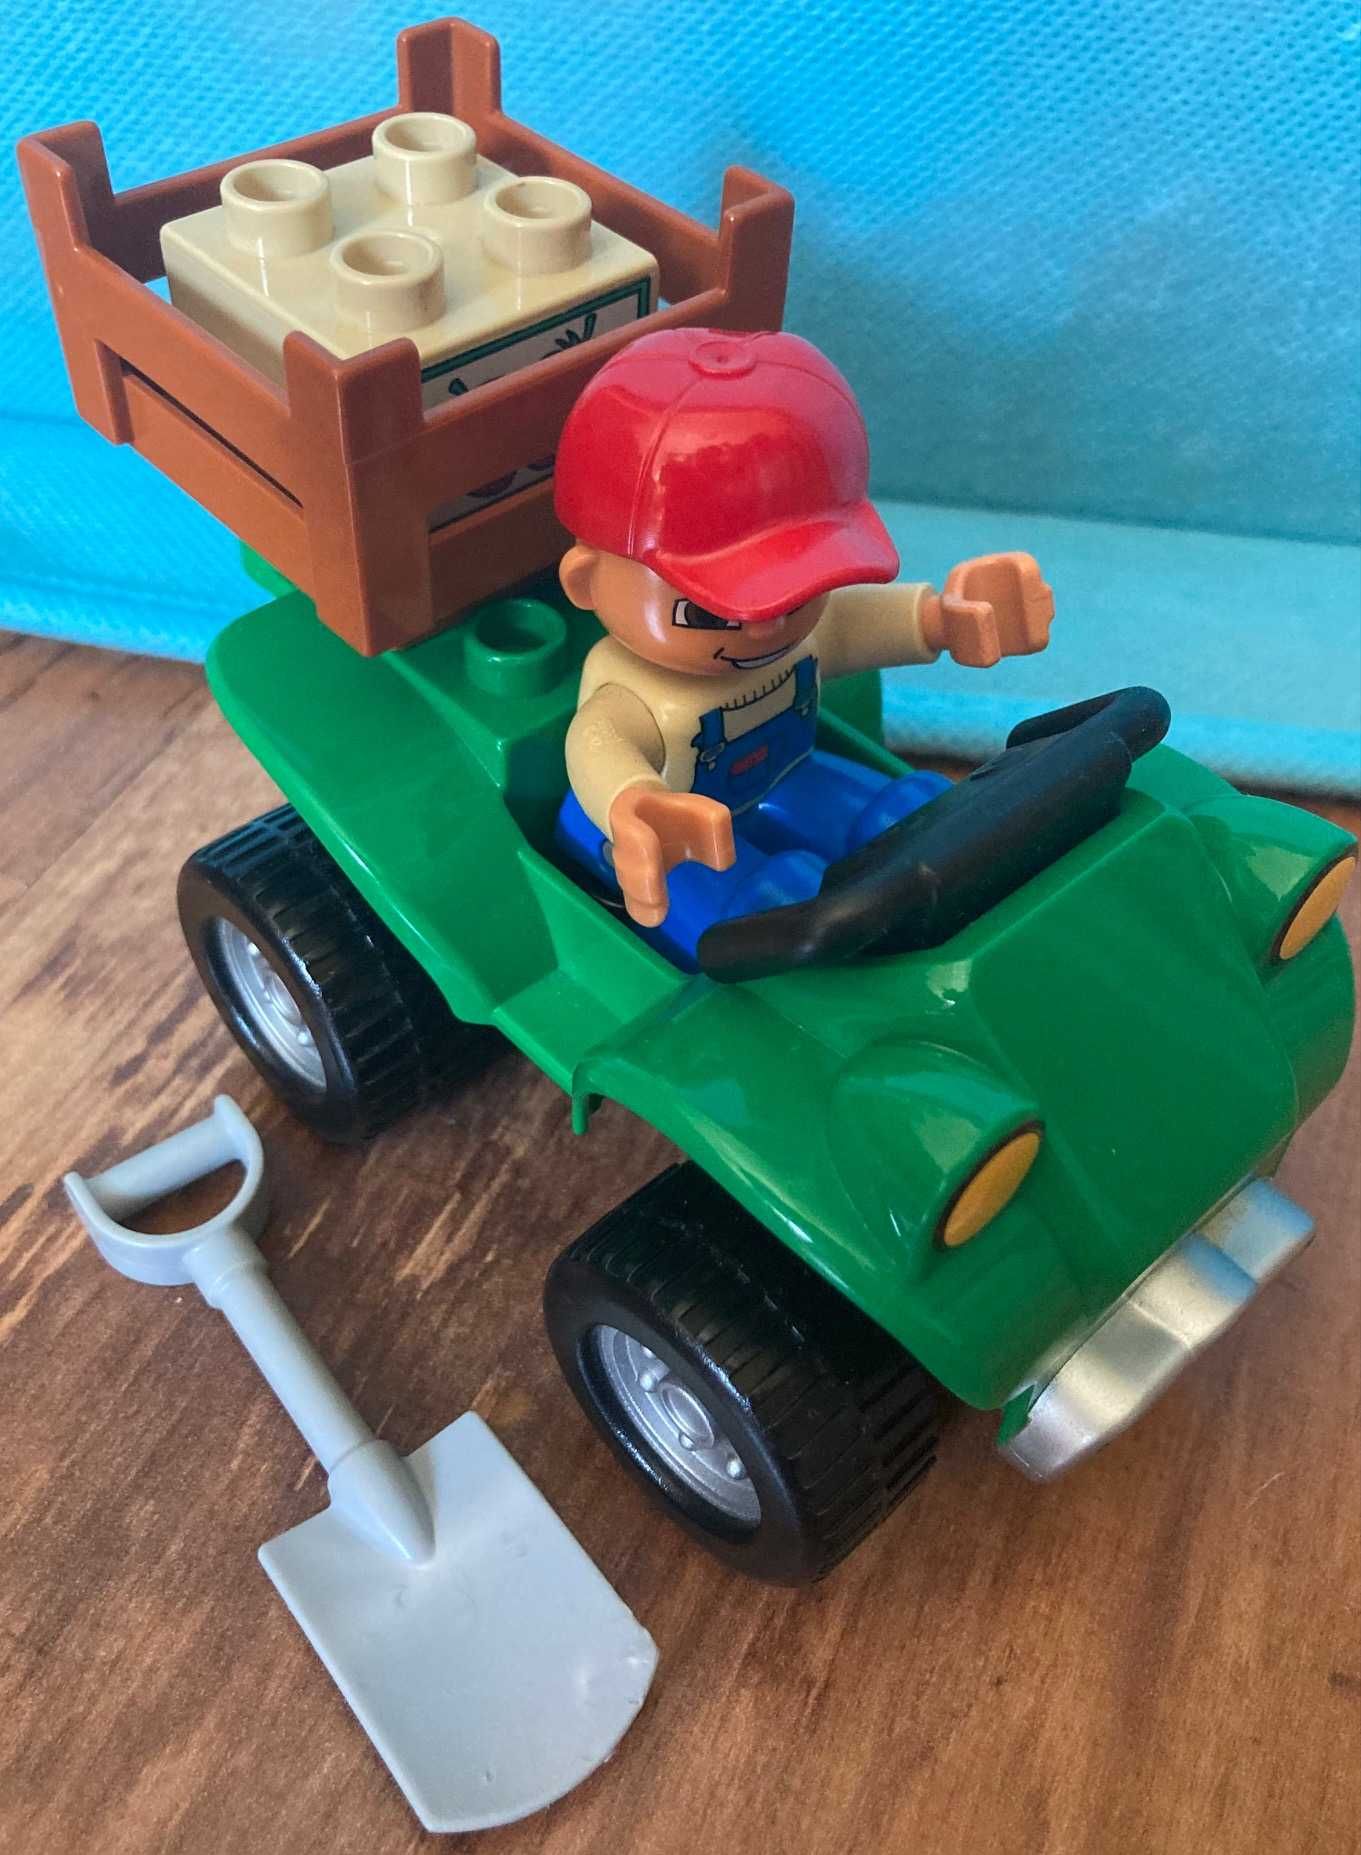 Lego Duplo 5645 farmer